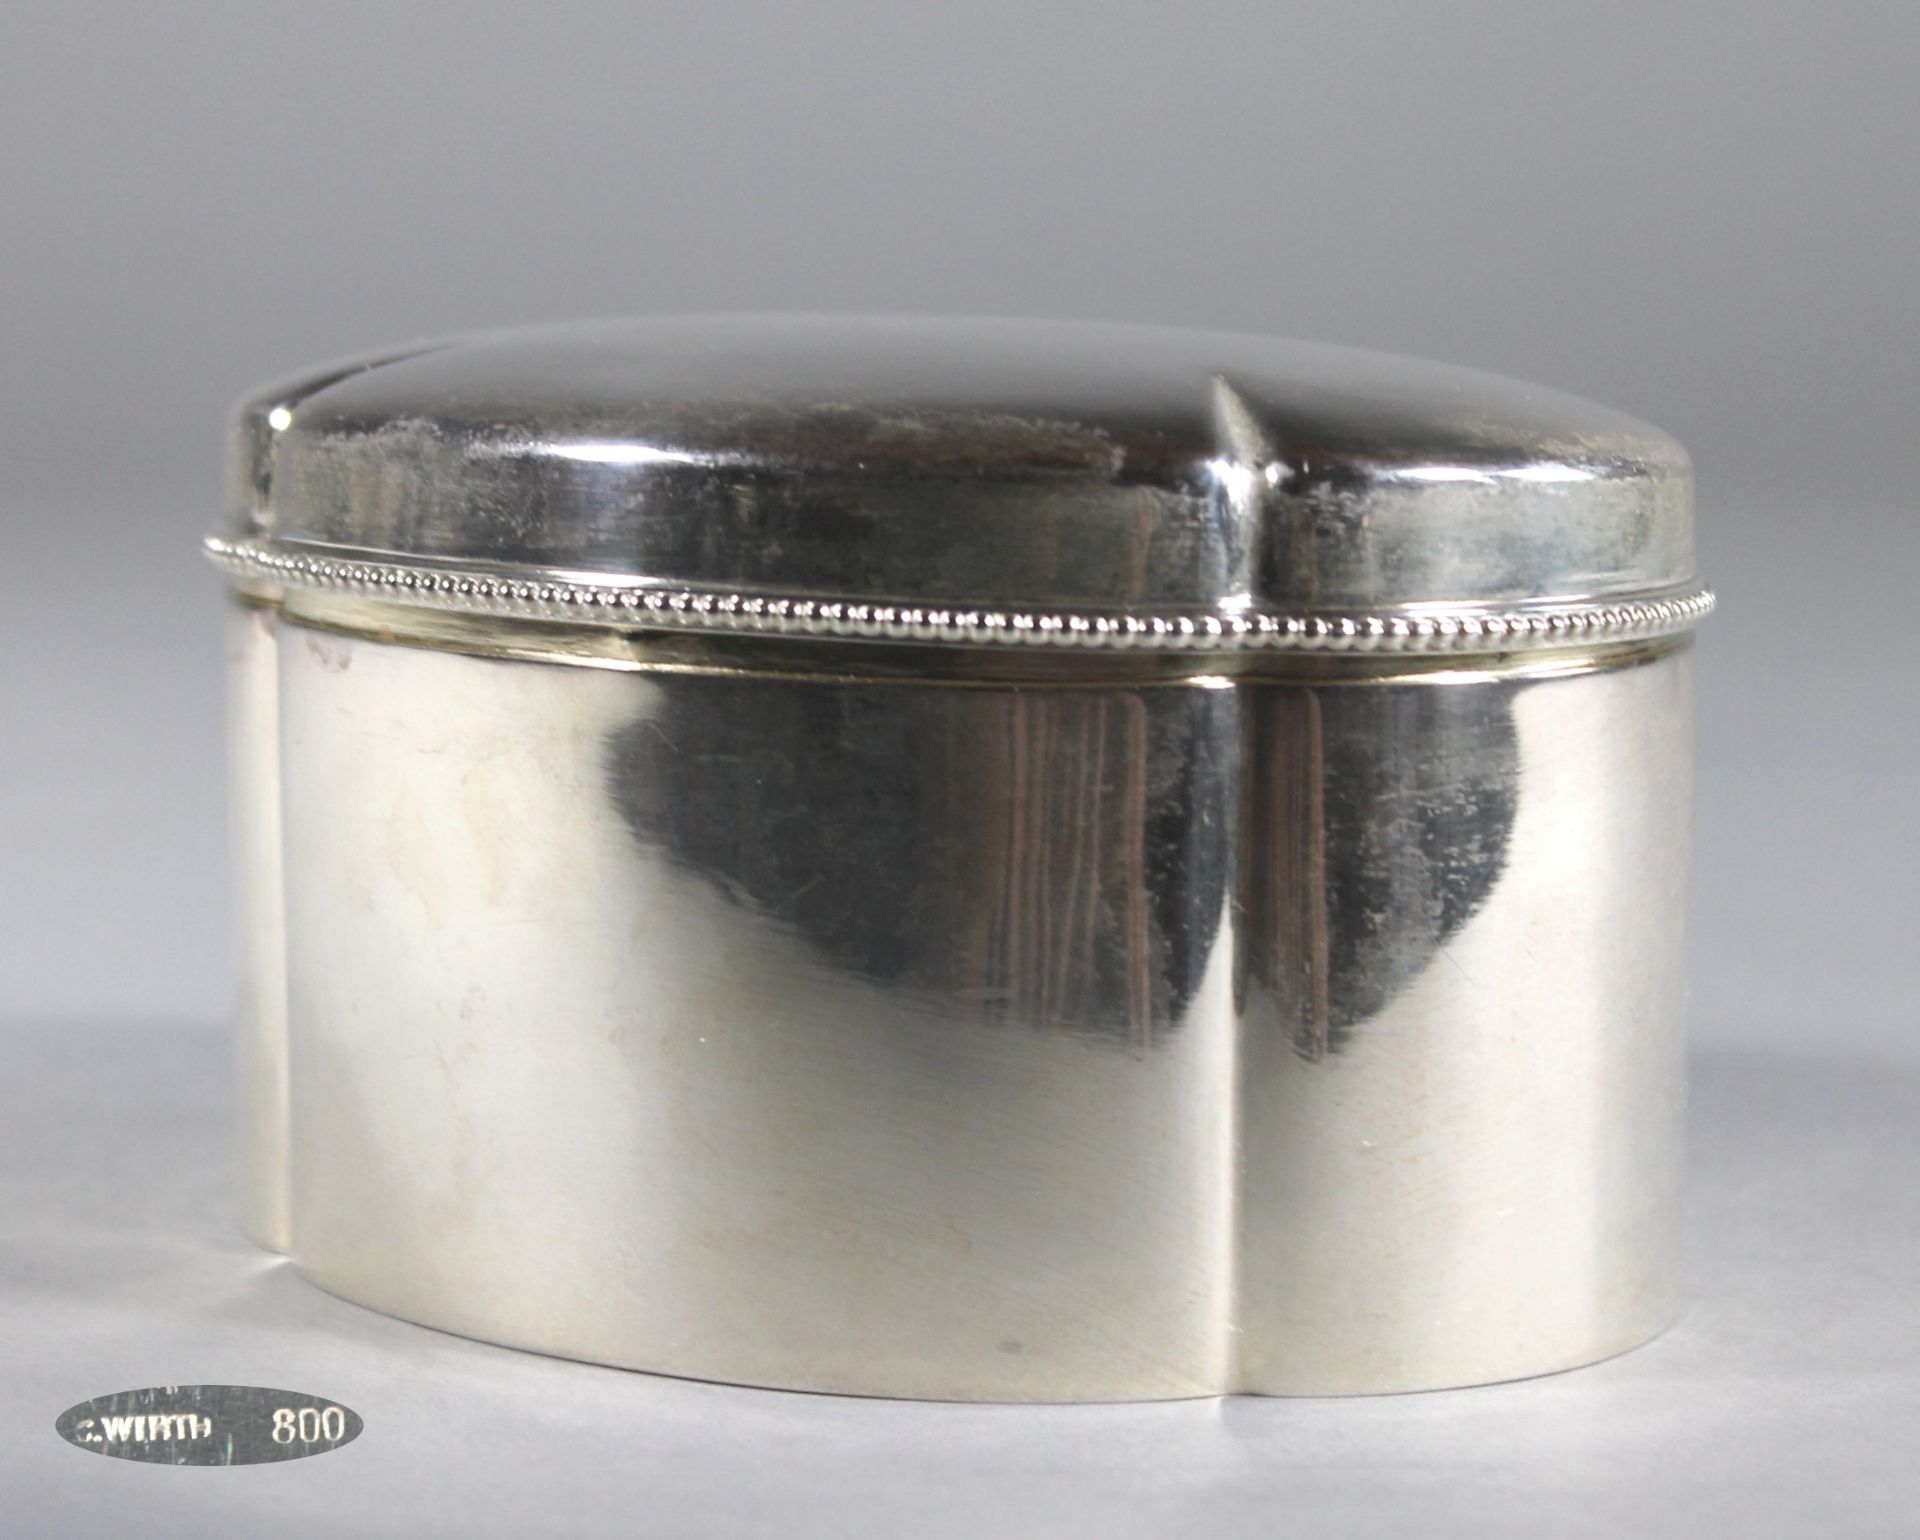 1 ovale Dose Silber (800/000), mit Juwelierpunze G. Wirth, passig geschweifte Form, Deckel und